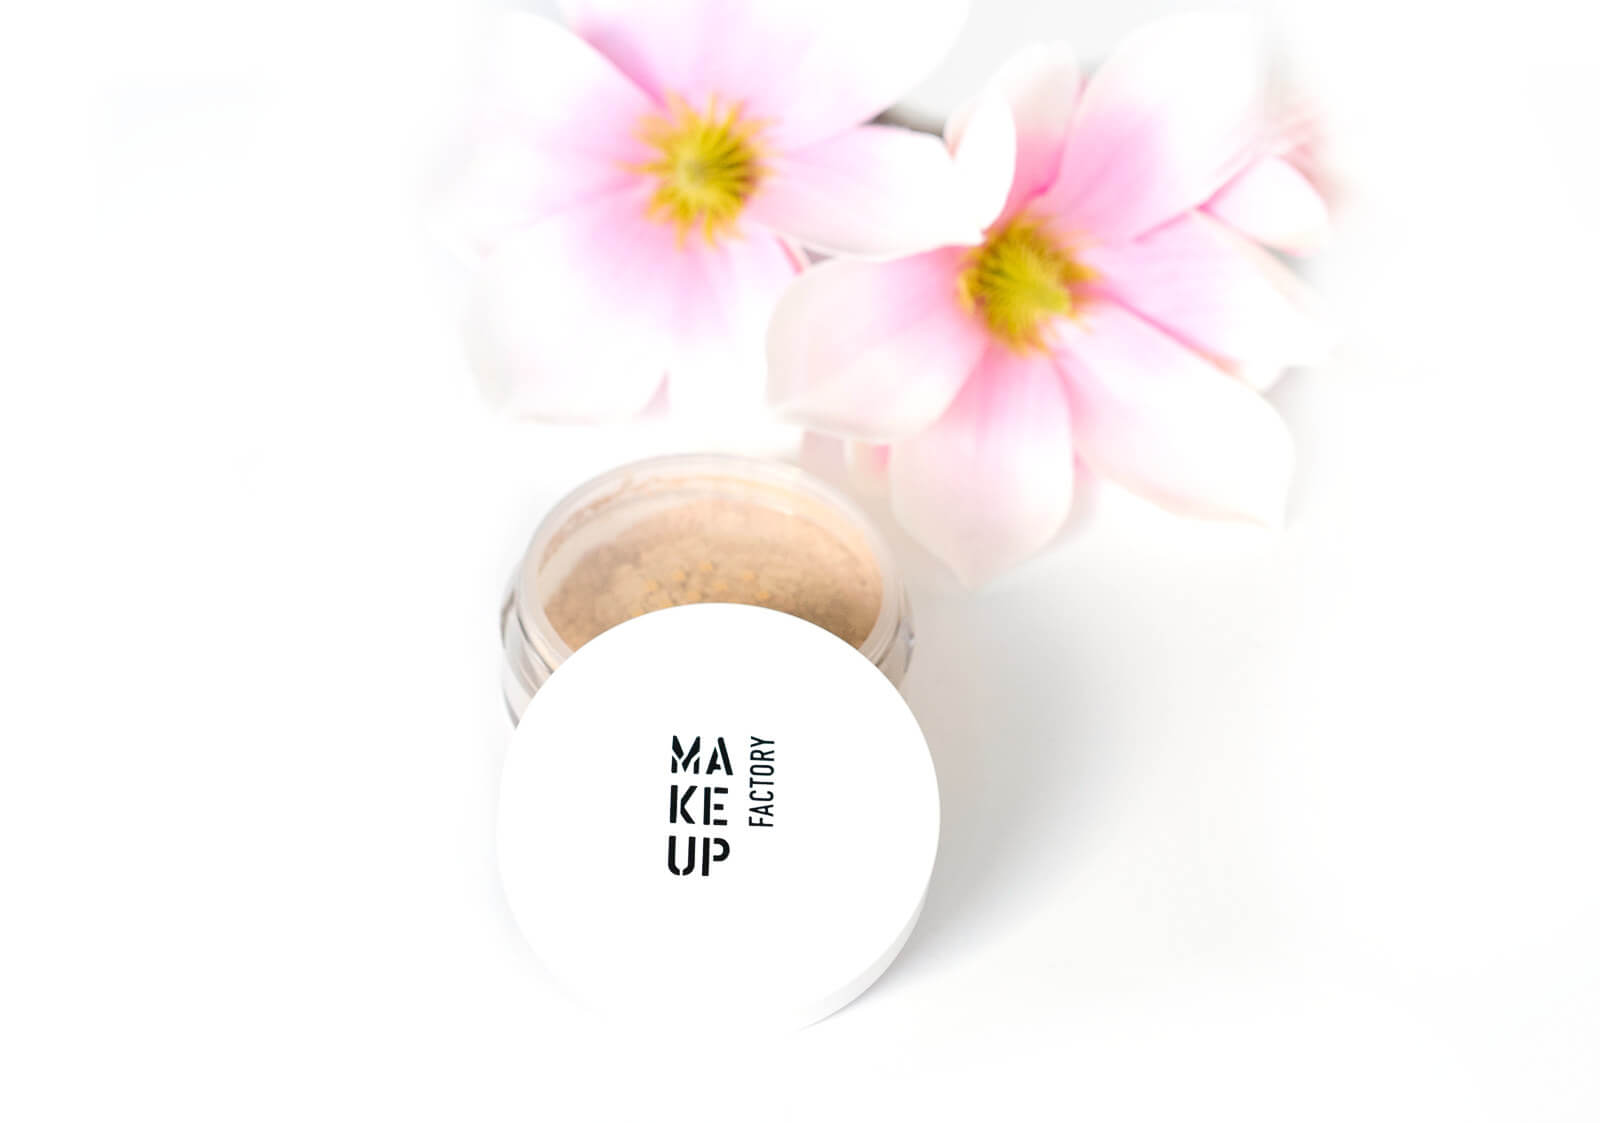 Review - Ein wunderschönes Make-up zaubern mit den Produkten von Make up Factory 18